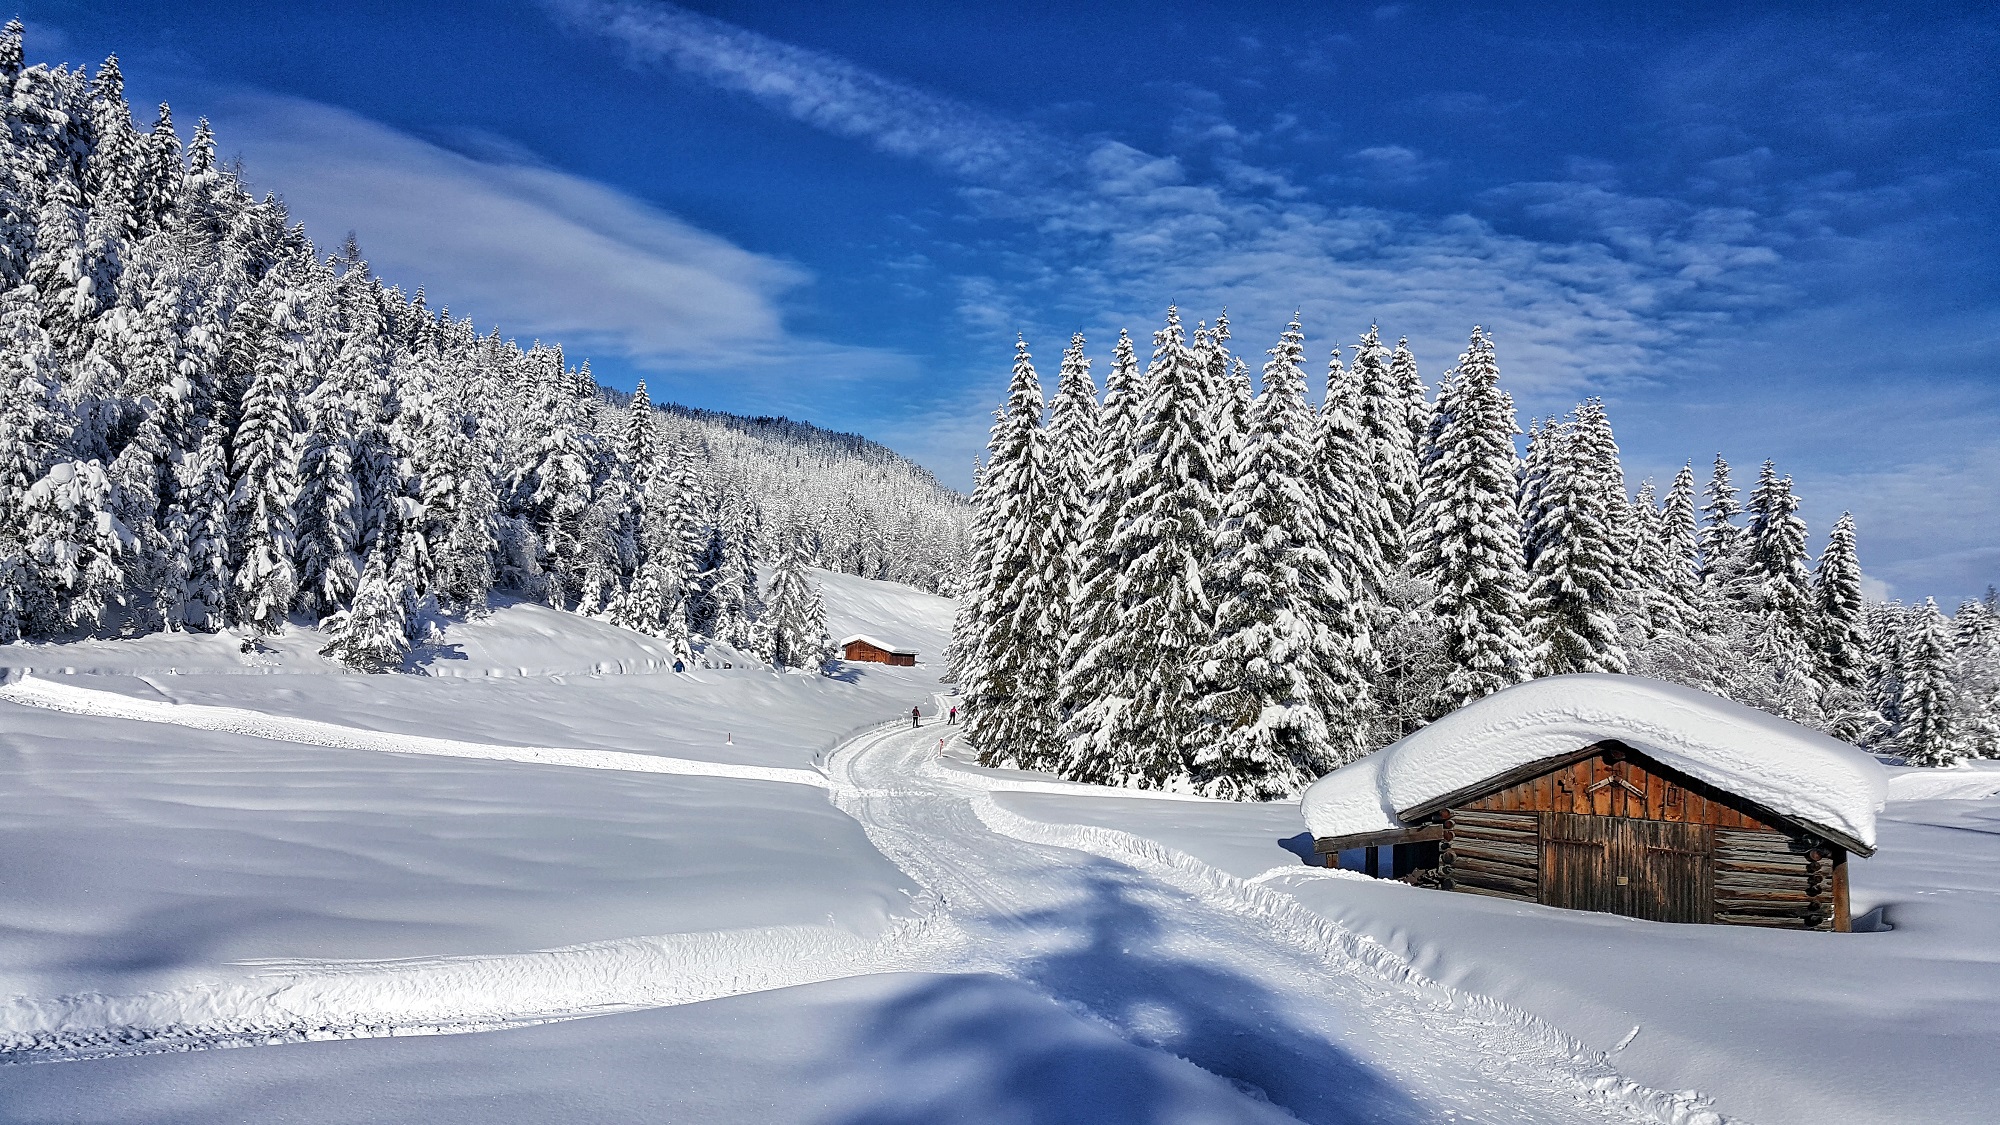 Alpy zimą. Co robić, jeżeli nie jeździmy na nartach?  5 pomysłów